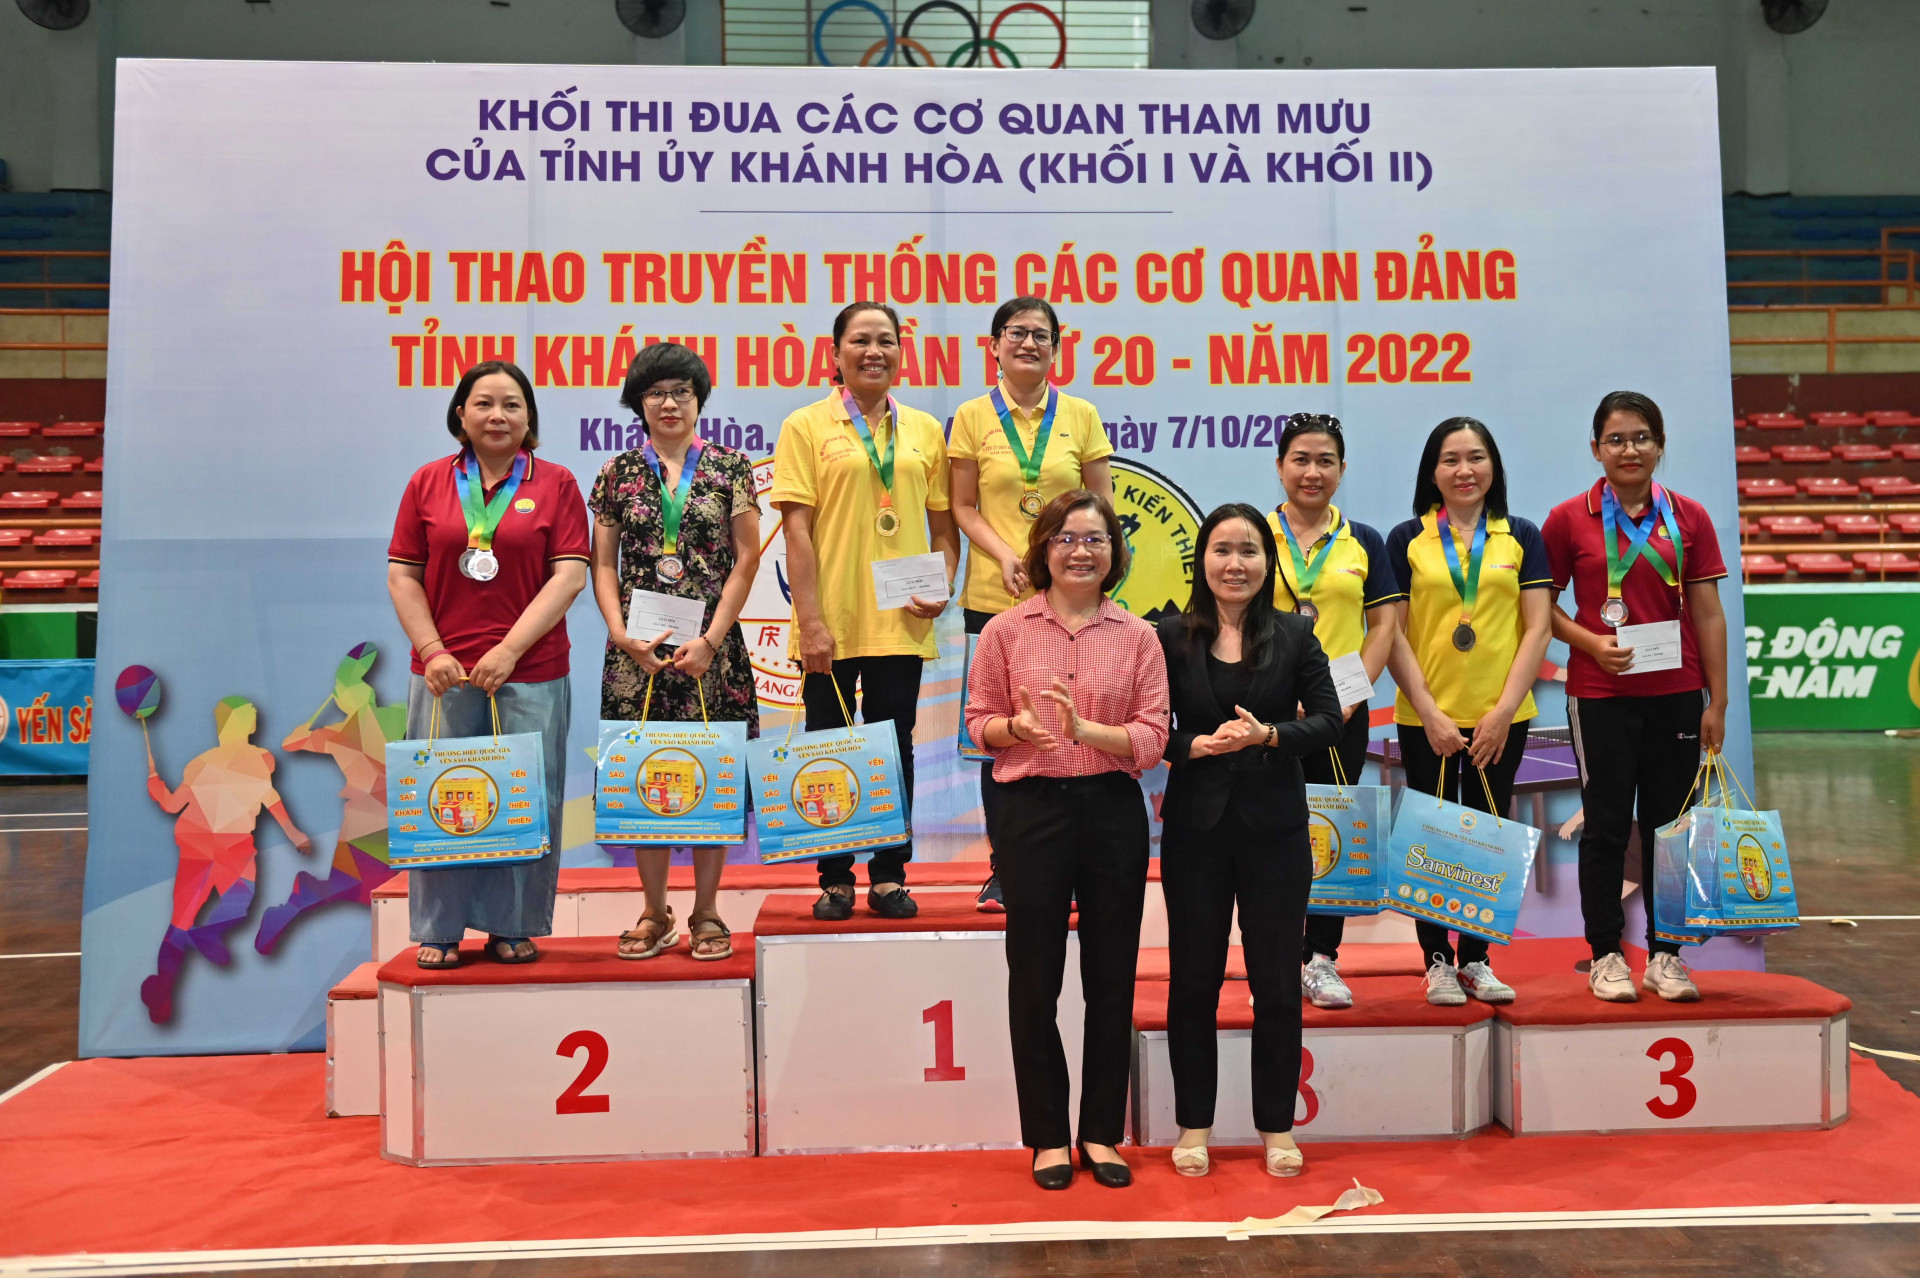 Winners of women’s doubles table tennis